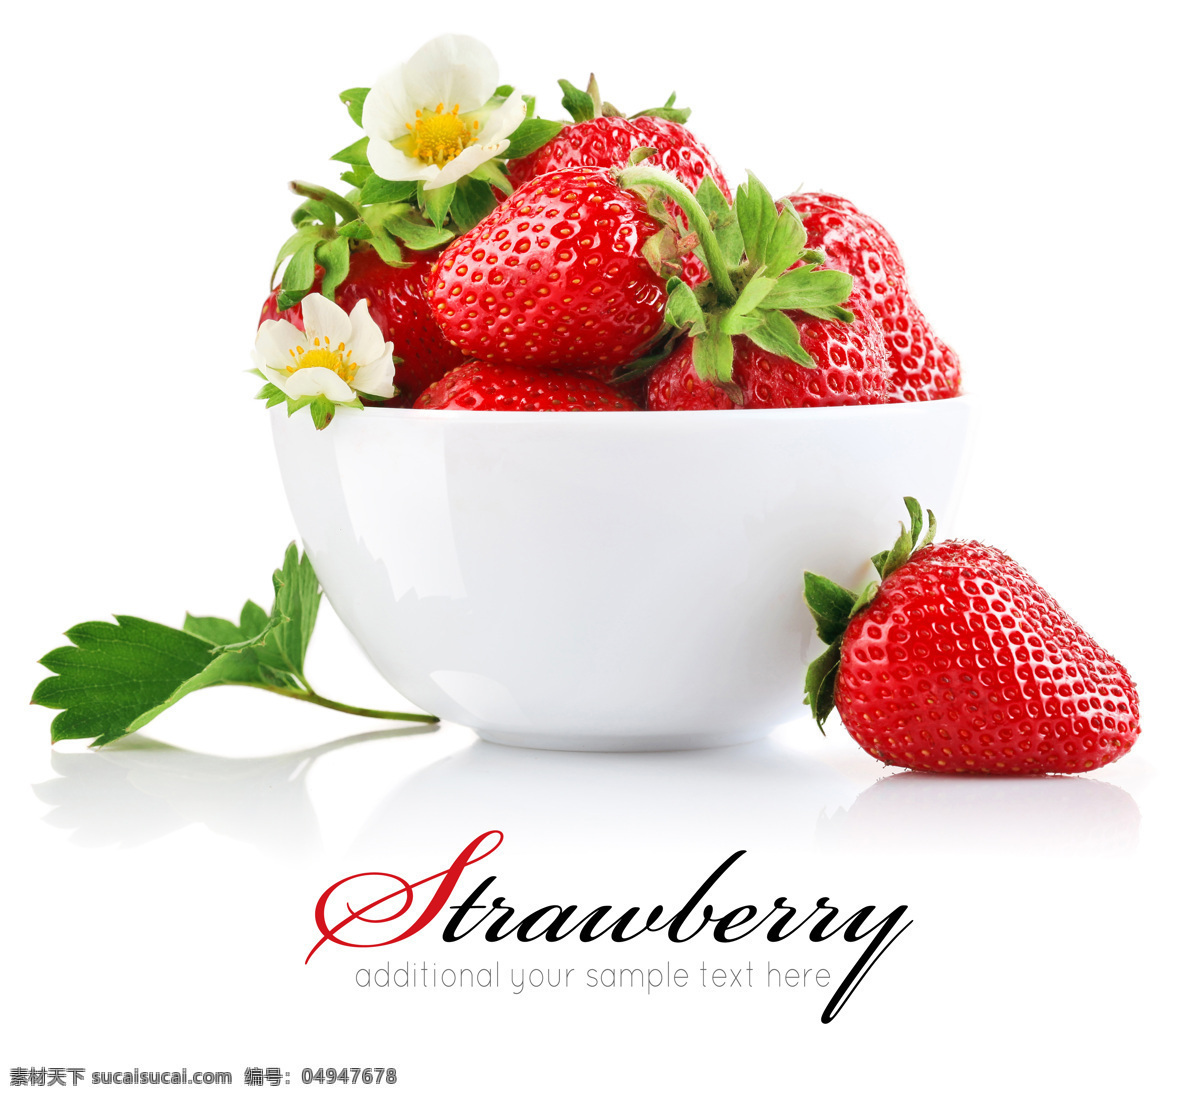 草莓图片 红色草莓 奶油草莓 双流冬草莓 红草莓 甜 水果 浆果 背景 标签 草莓素材 草莓棚拍 草莓背景图片 草莓设计 生物世界